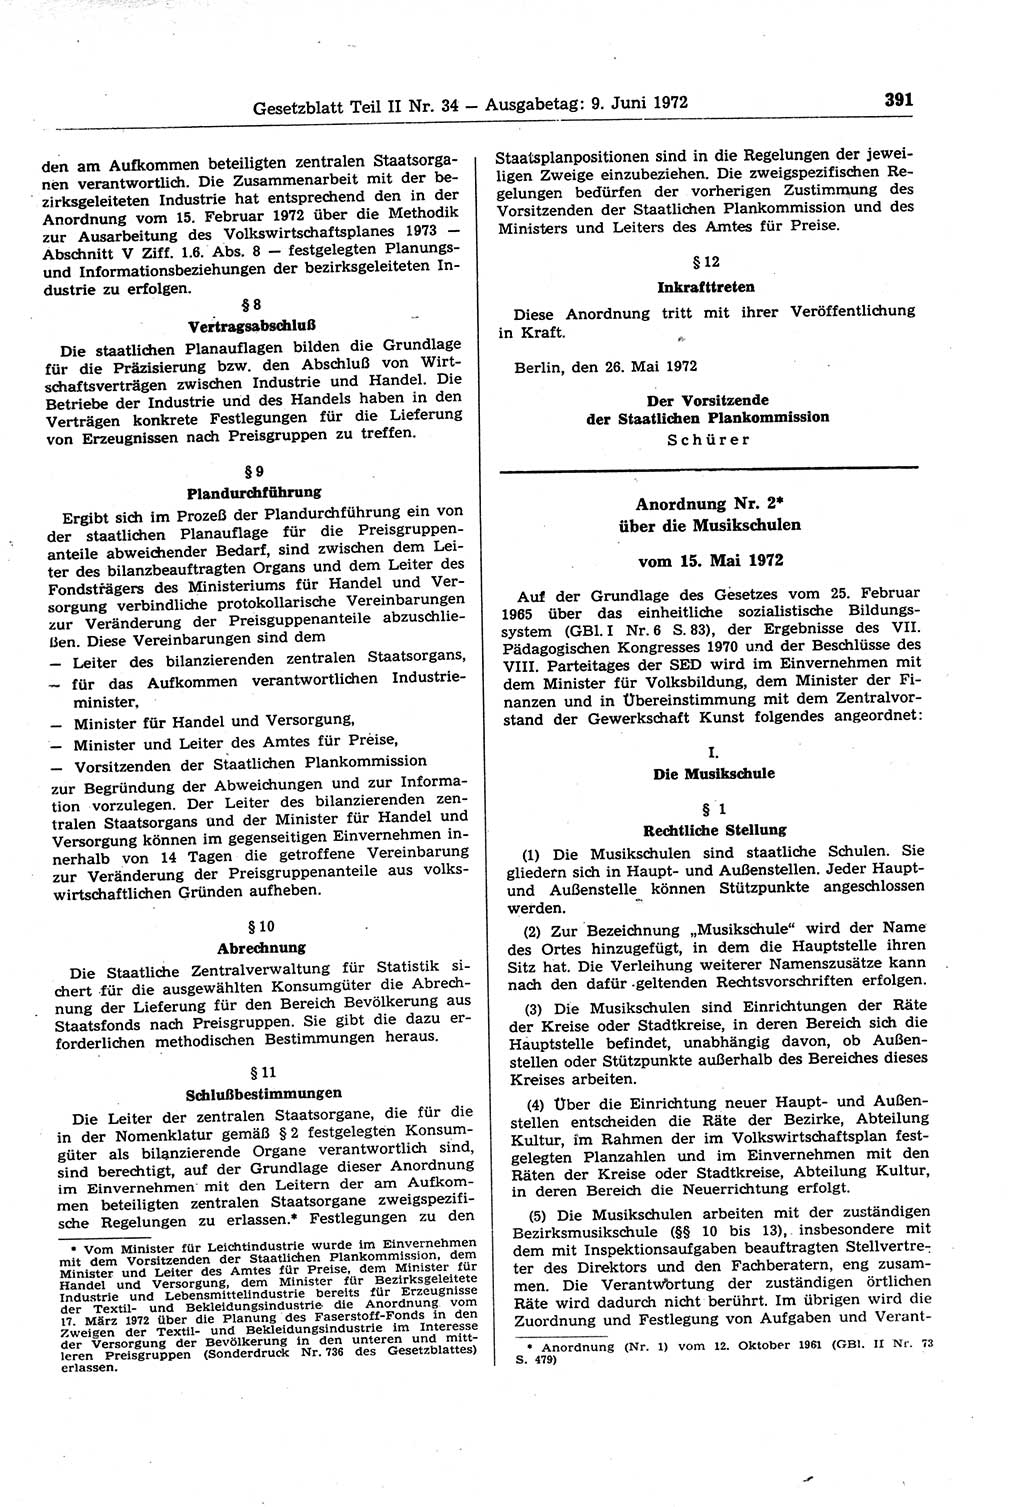 Gesetzblatt (GBl.) der Deutschen Demokratischen Republik (DDR) Teil ⅠⅠ 1972, Seite 391 (GBl. DDR ⅠⅠ 1972, S. 391)